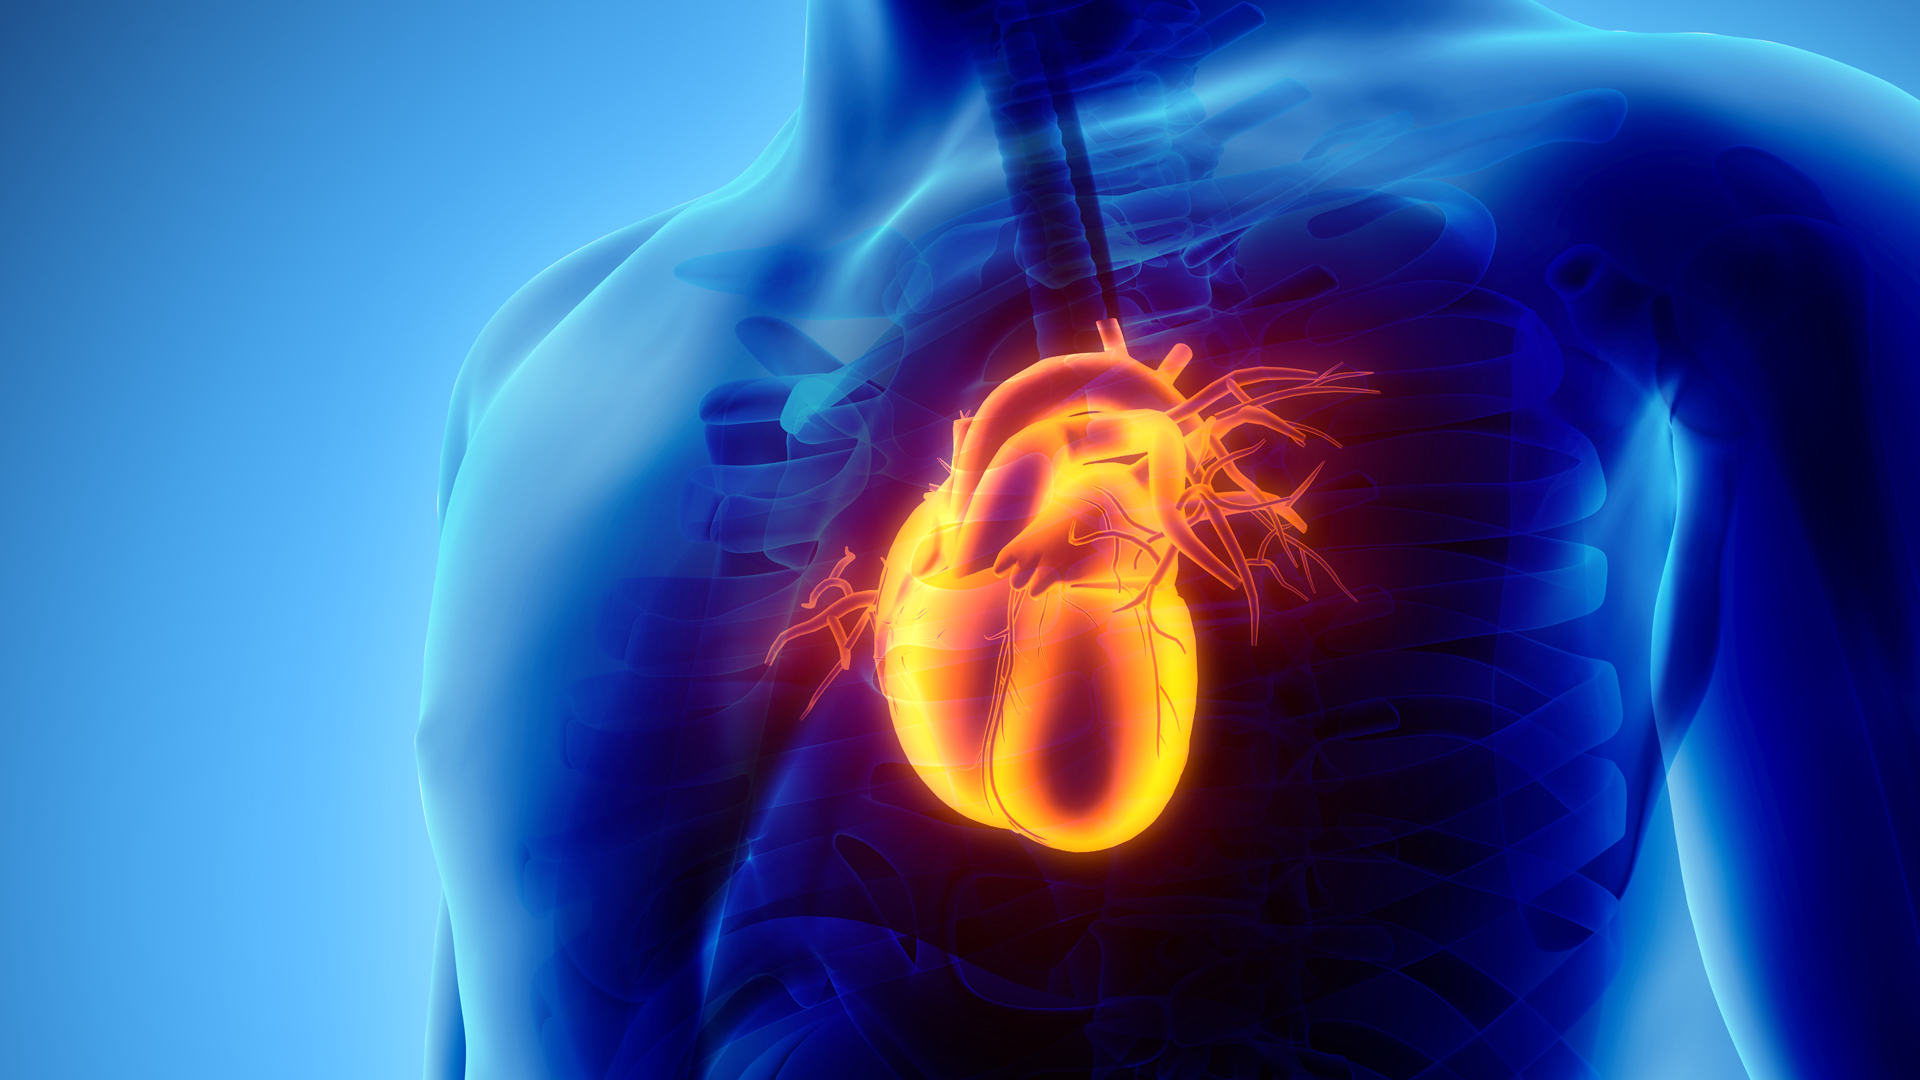 Los estados de enojo extendidos en el tiempo pueden agravar afecciones preexistentes, como las cardiovasculares